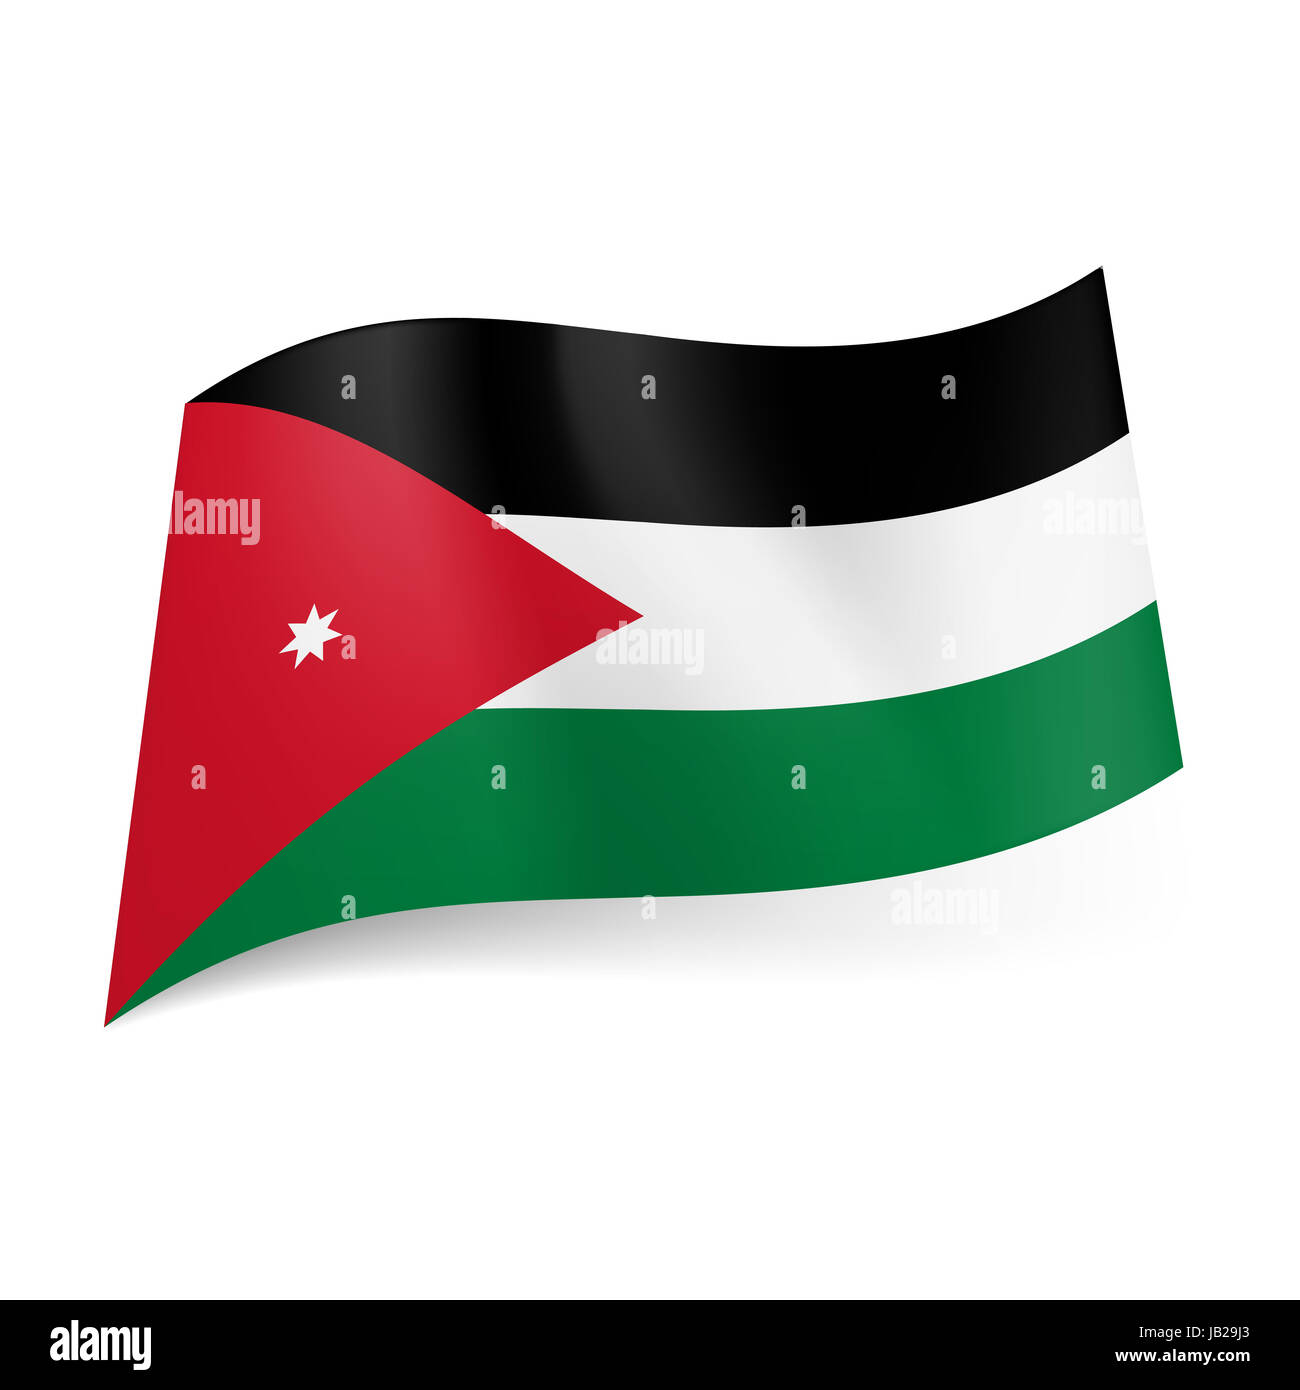 La bandera nacional de Jordania: negro, blanco y verde de rayas  horizontales, el triángulo rojo con la estrella blanca en el lado izquierdo  Fotografía de stock - Alamy